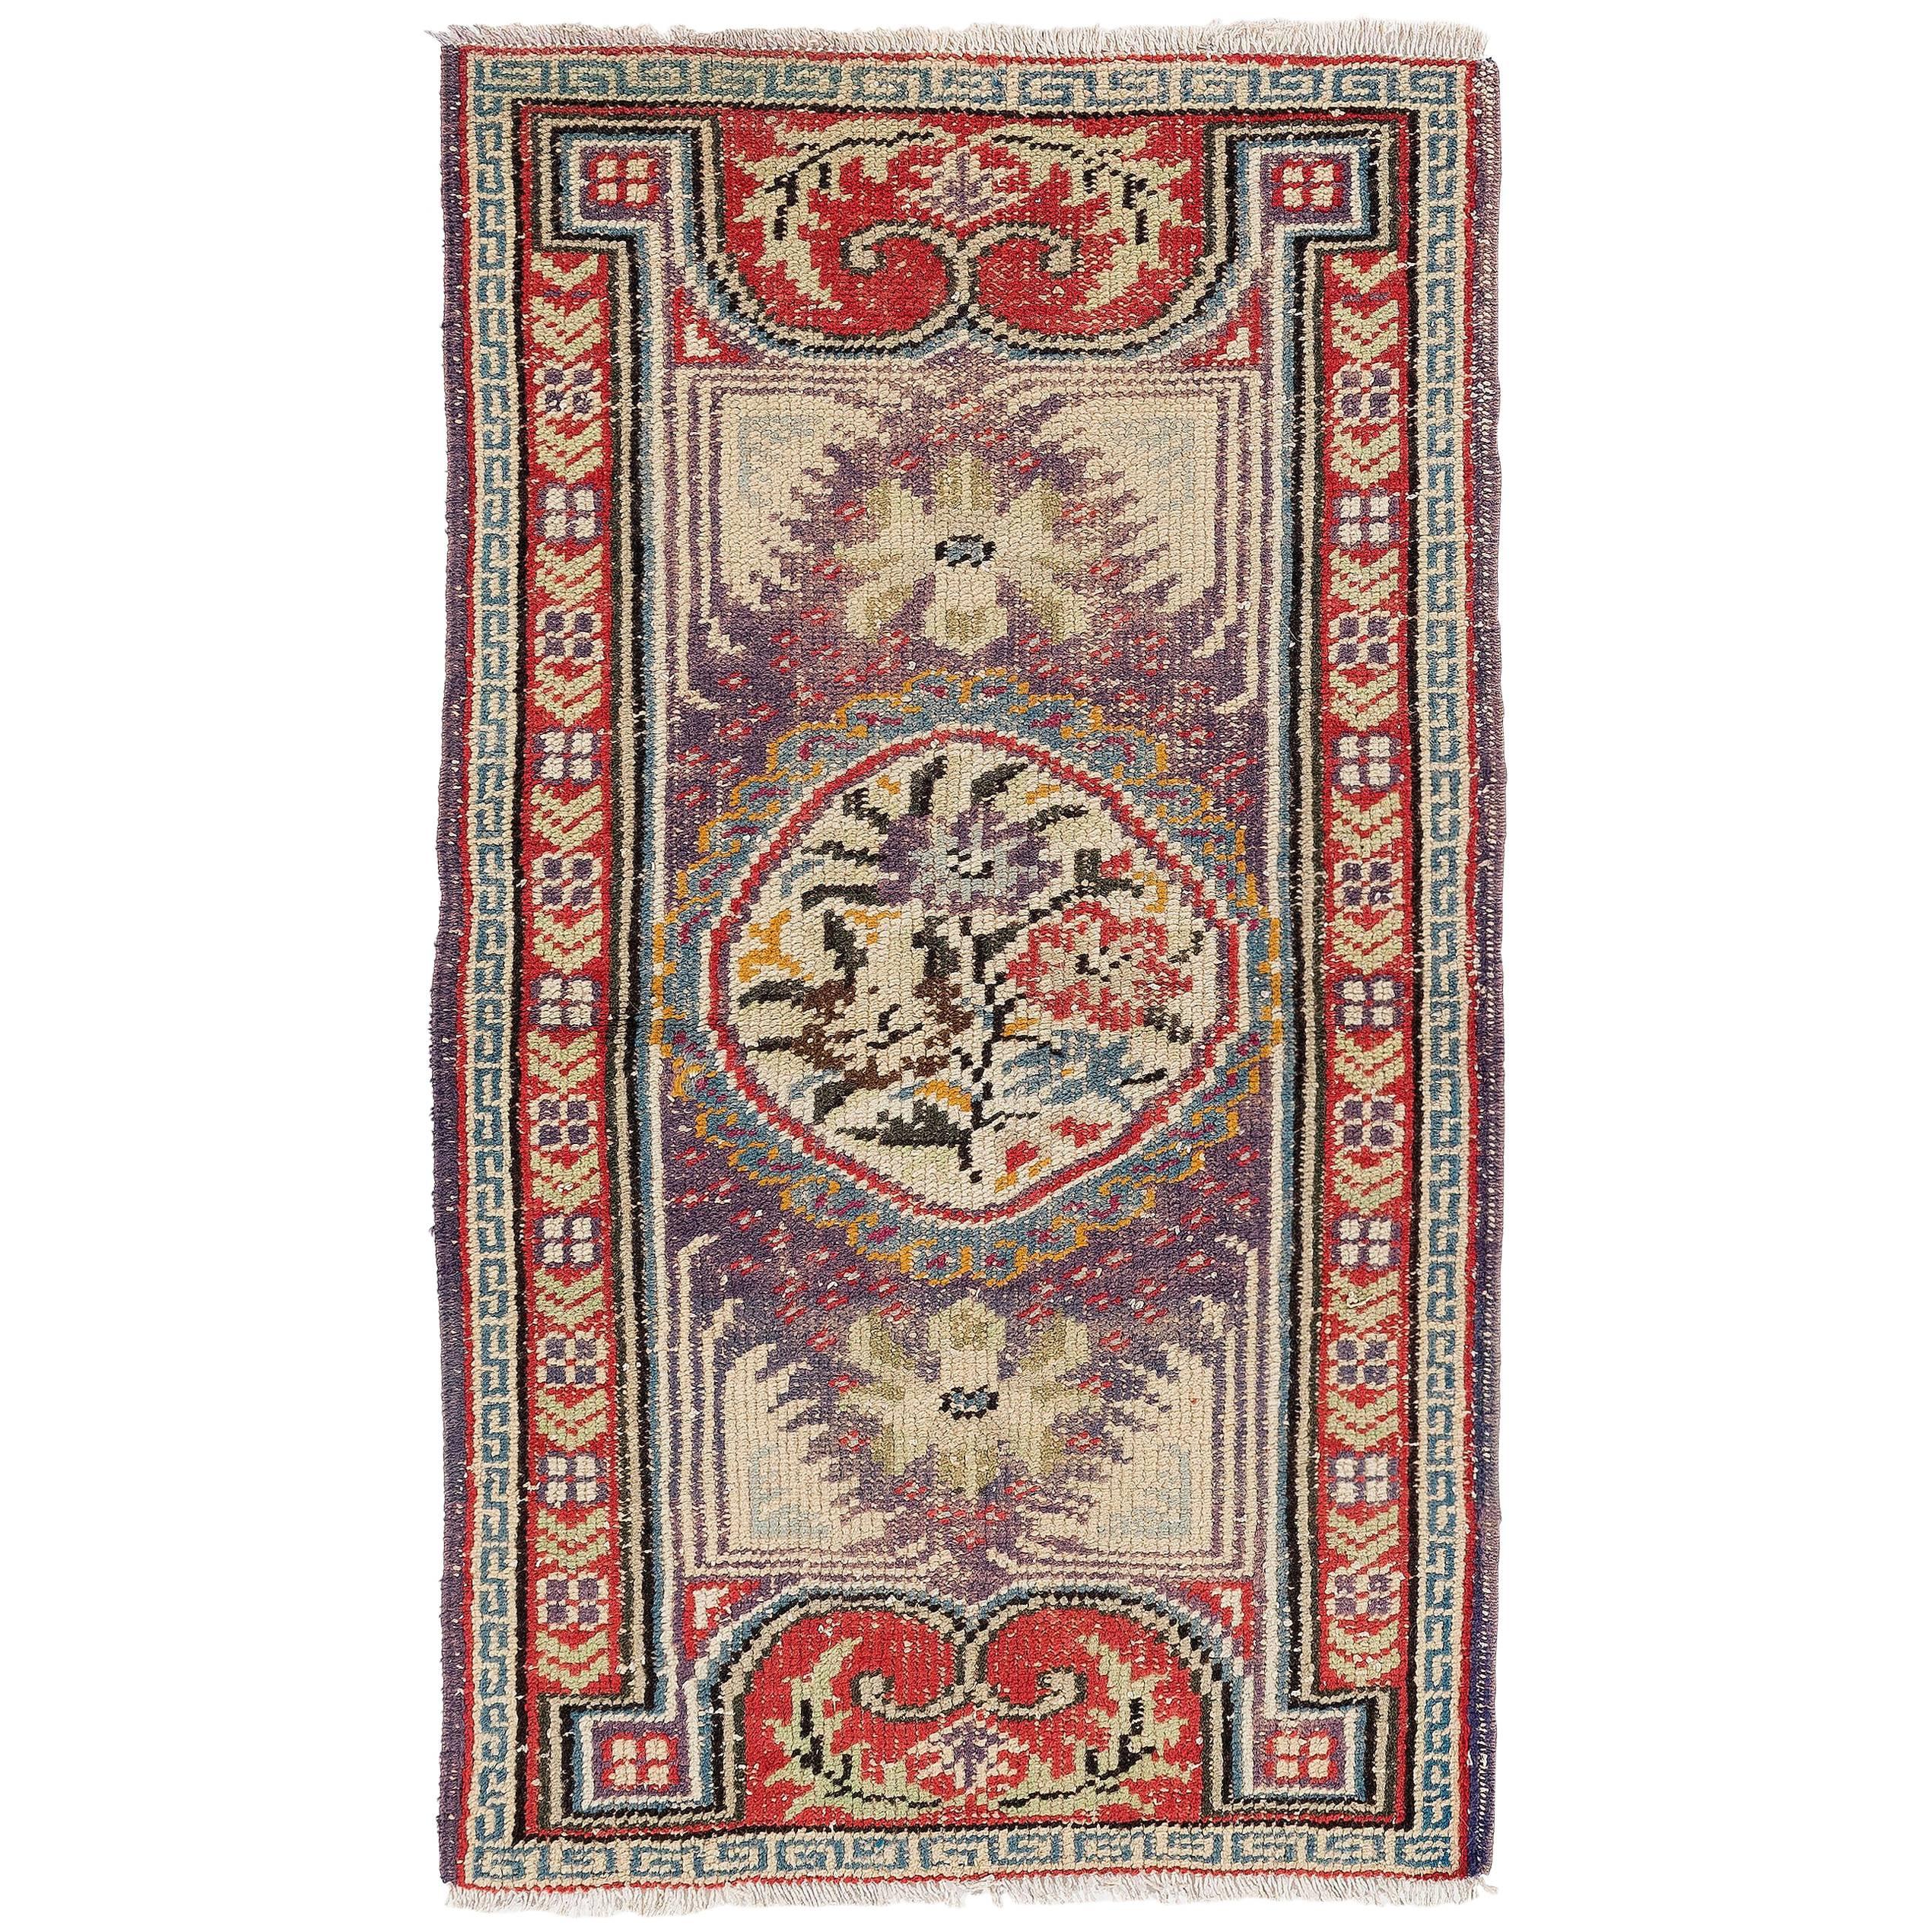 Vintage Tibetan Rug or Doormat